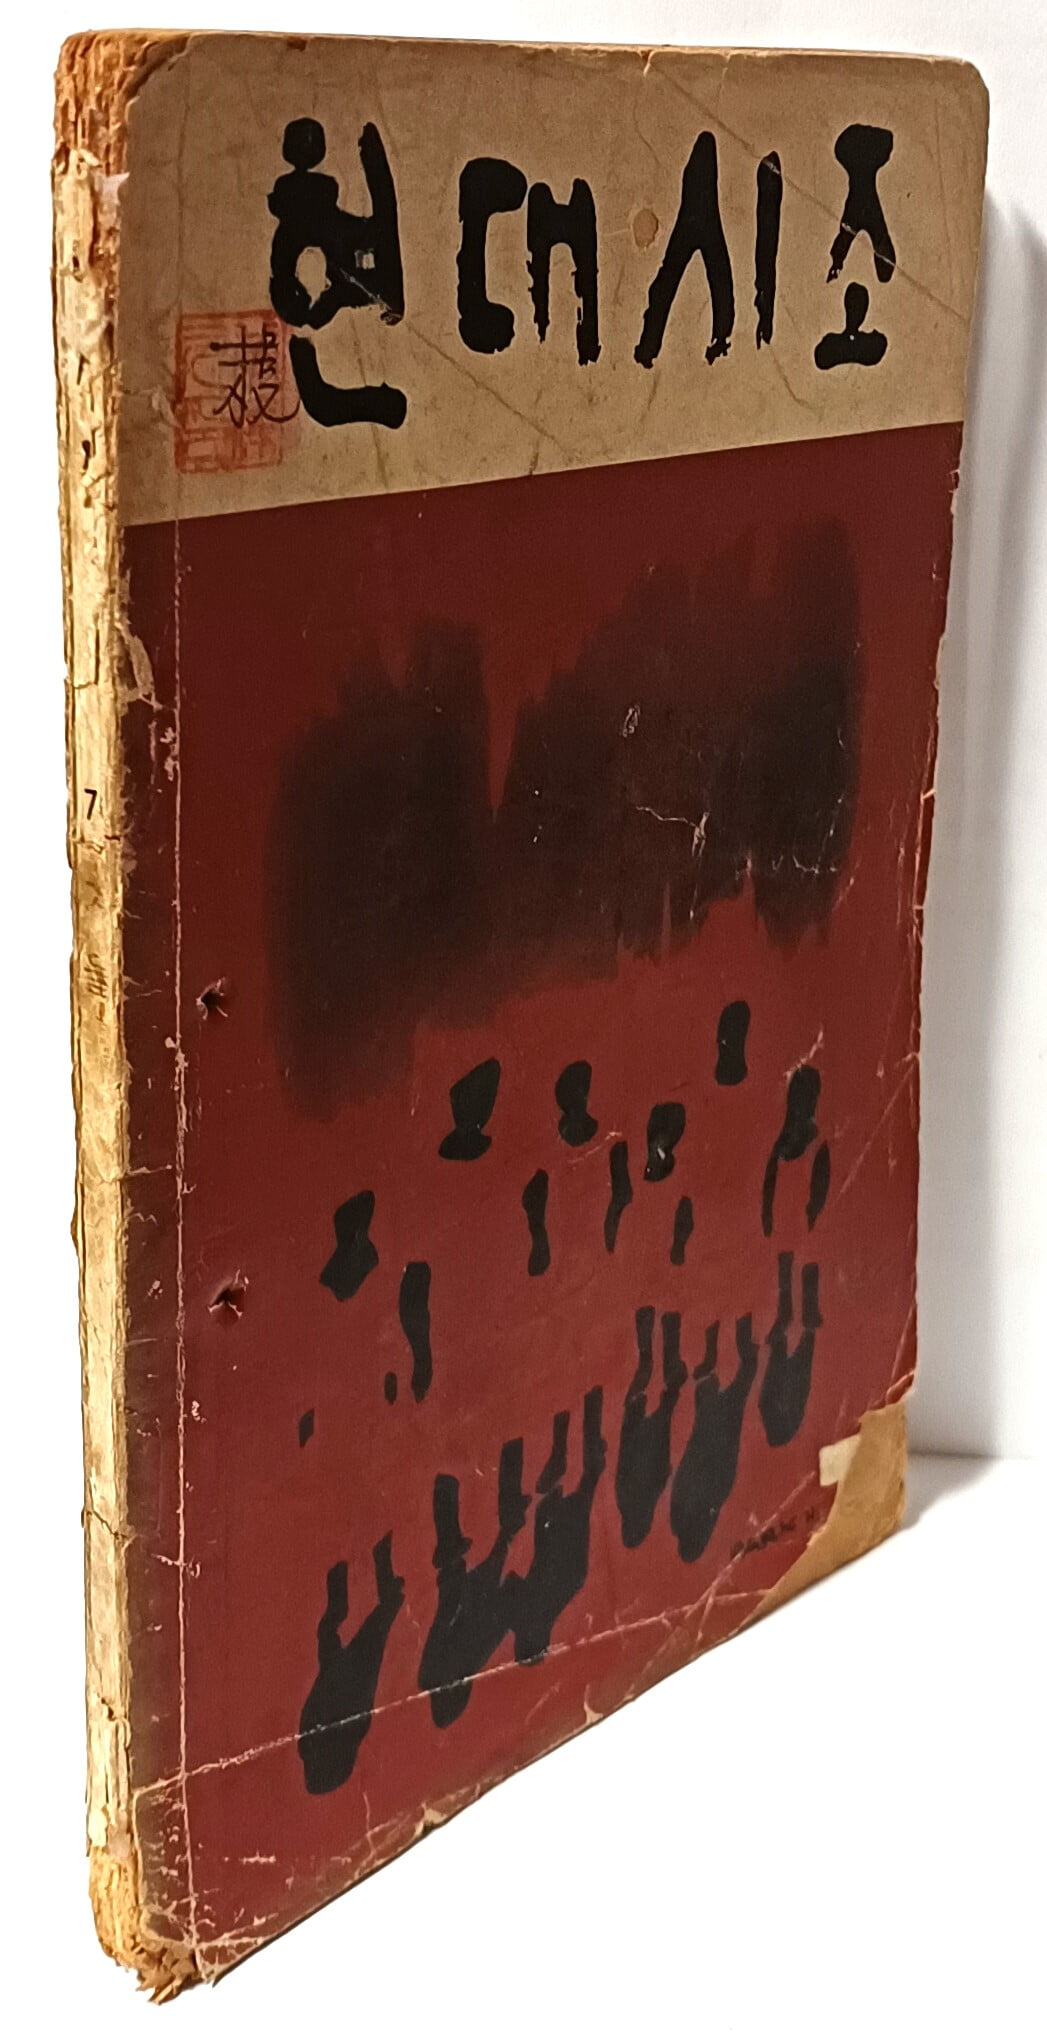 현대시조 제2호 -1970년 초판(희귀본)- 이은상:천지송, 신석정:버드나무 심은 뜻은-148/210, 100쪽-아래설명참조-